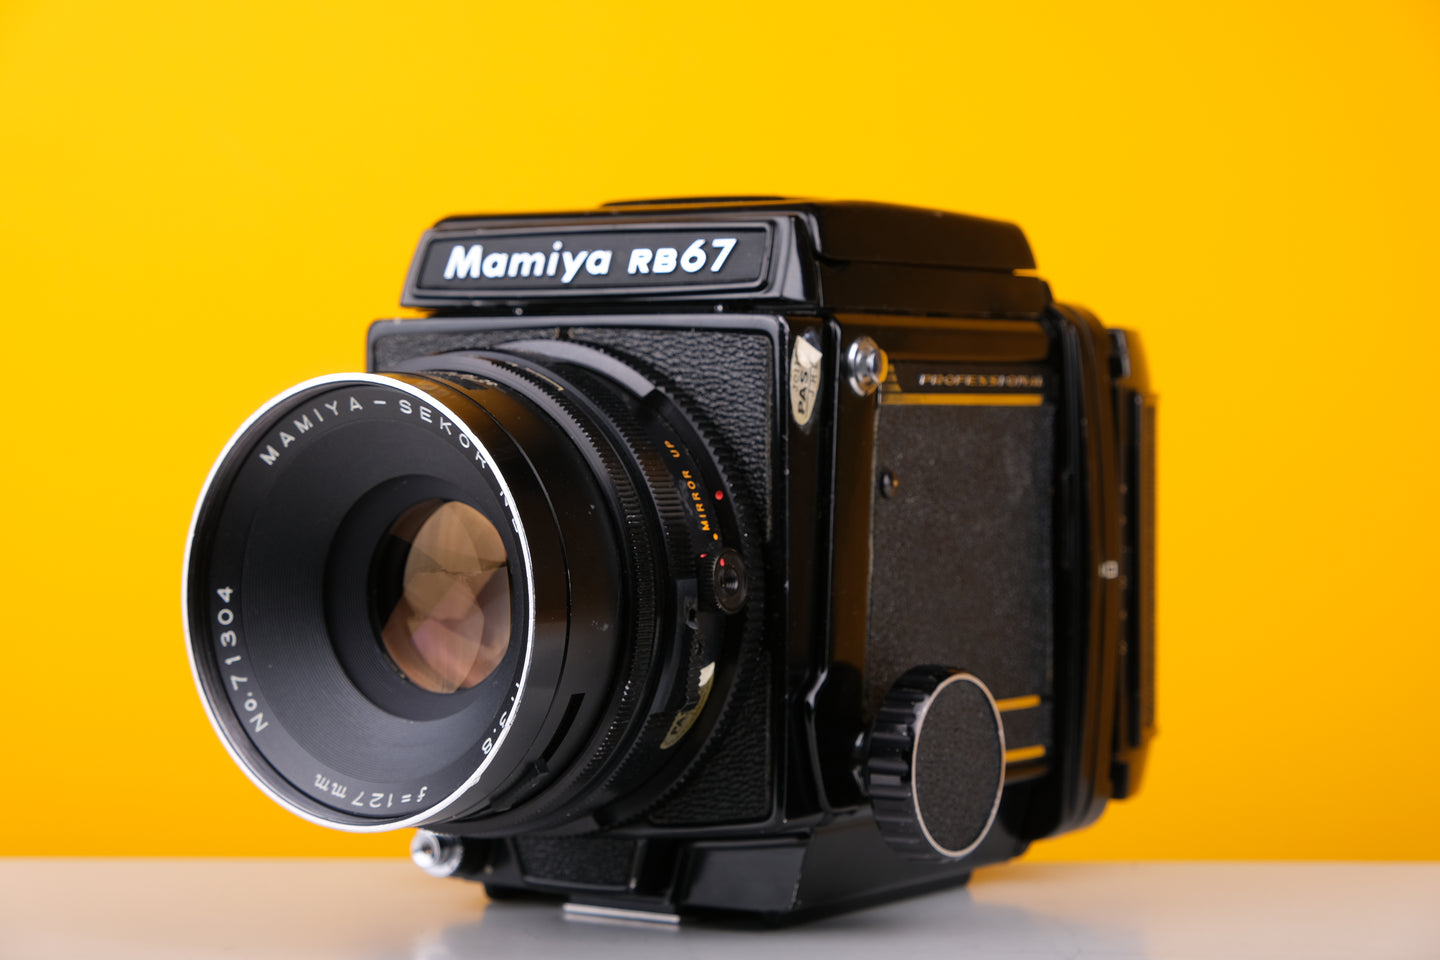 Mamiya RB67 Medium Format Film Camera with 127mm f3.8 Lens